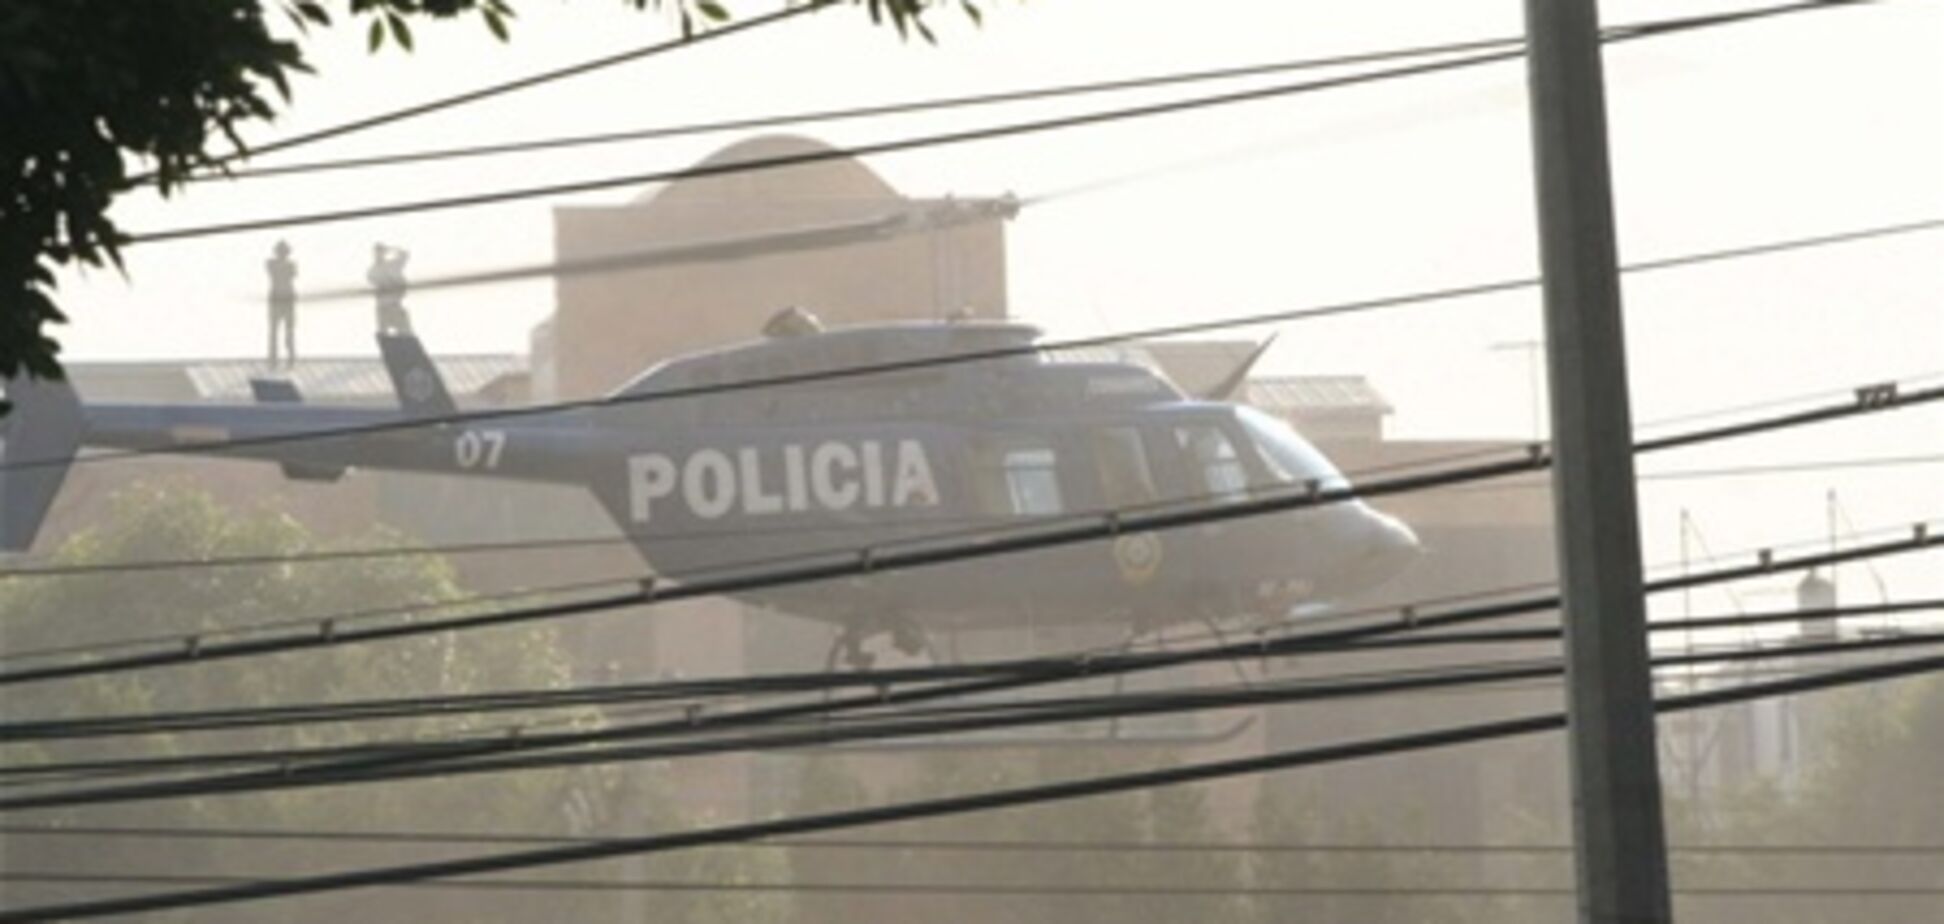 Взрыв небоскреба в Мексике: причины неизвестны. Видео